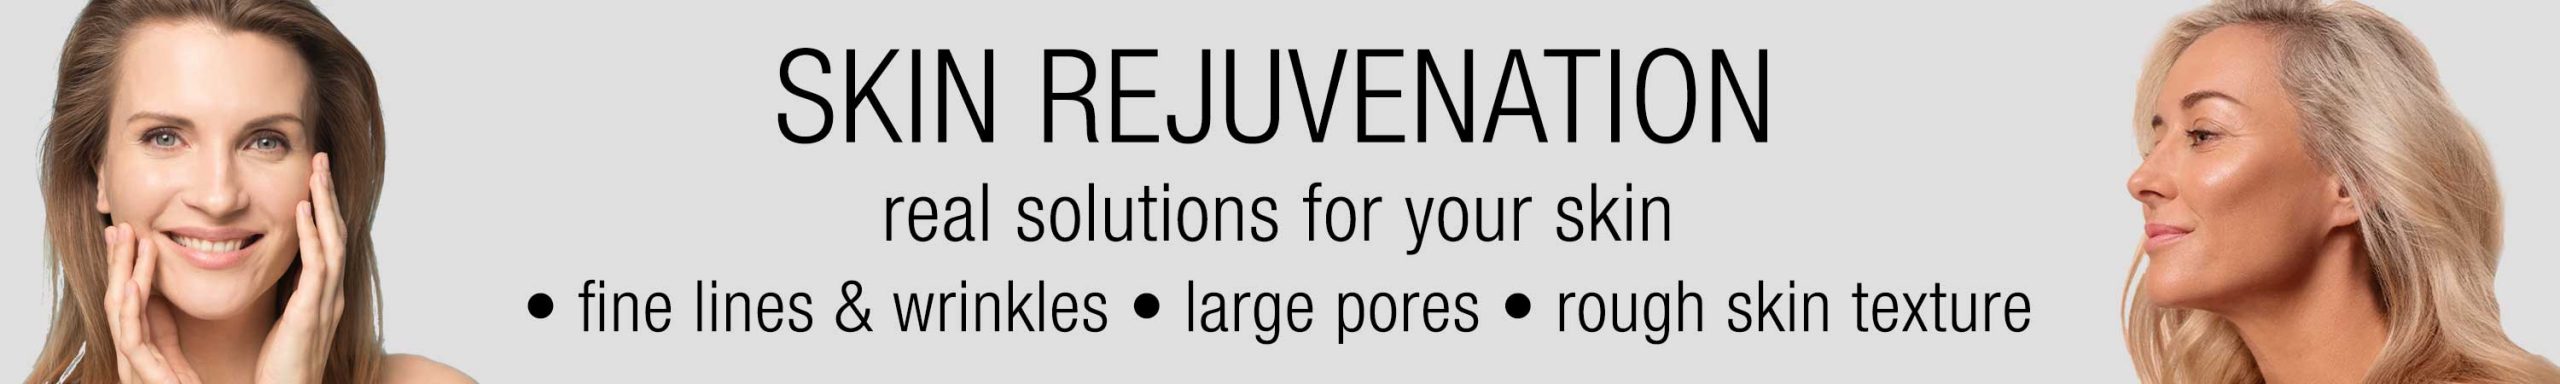 skin-rejuvenation-banner